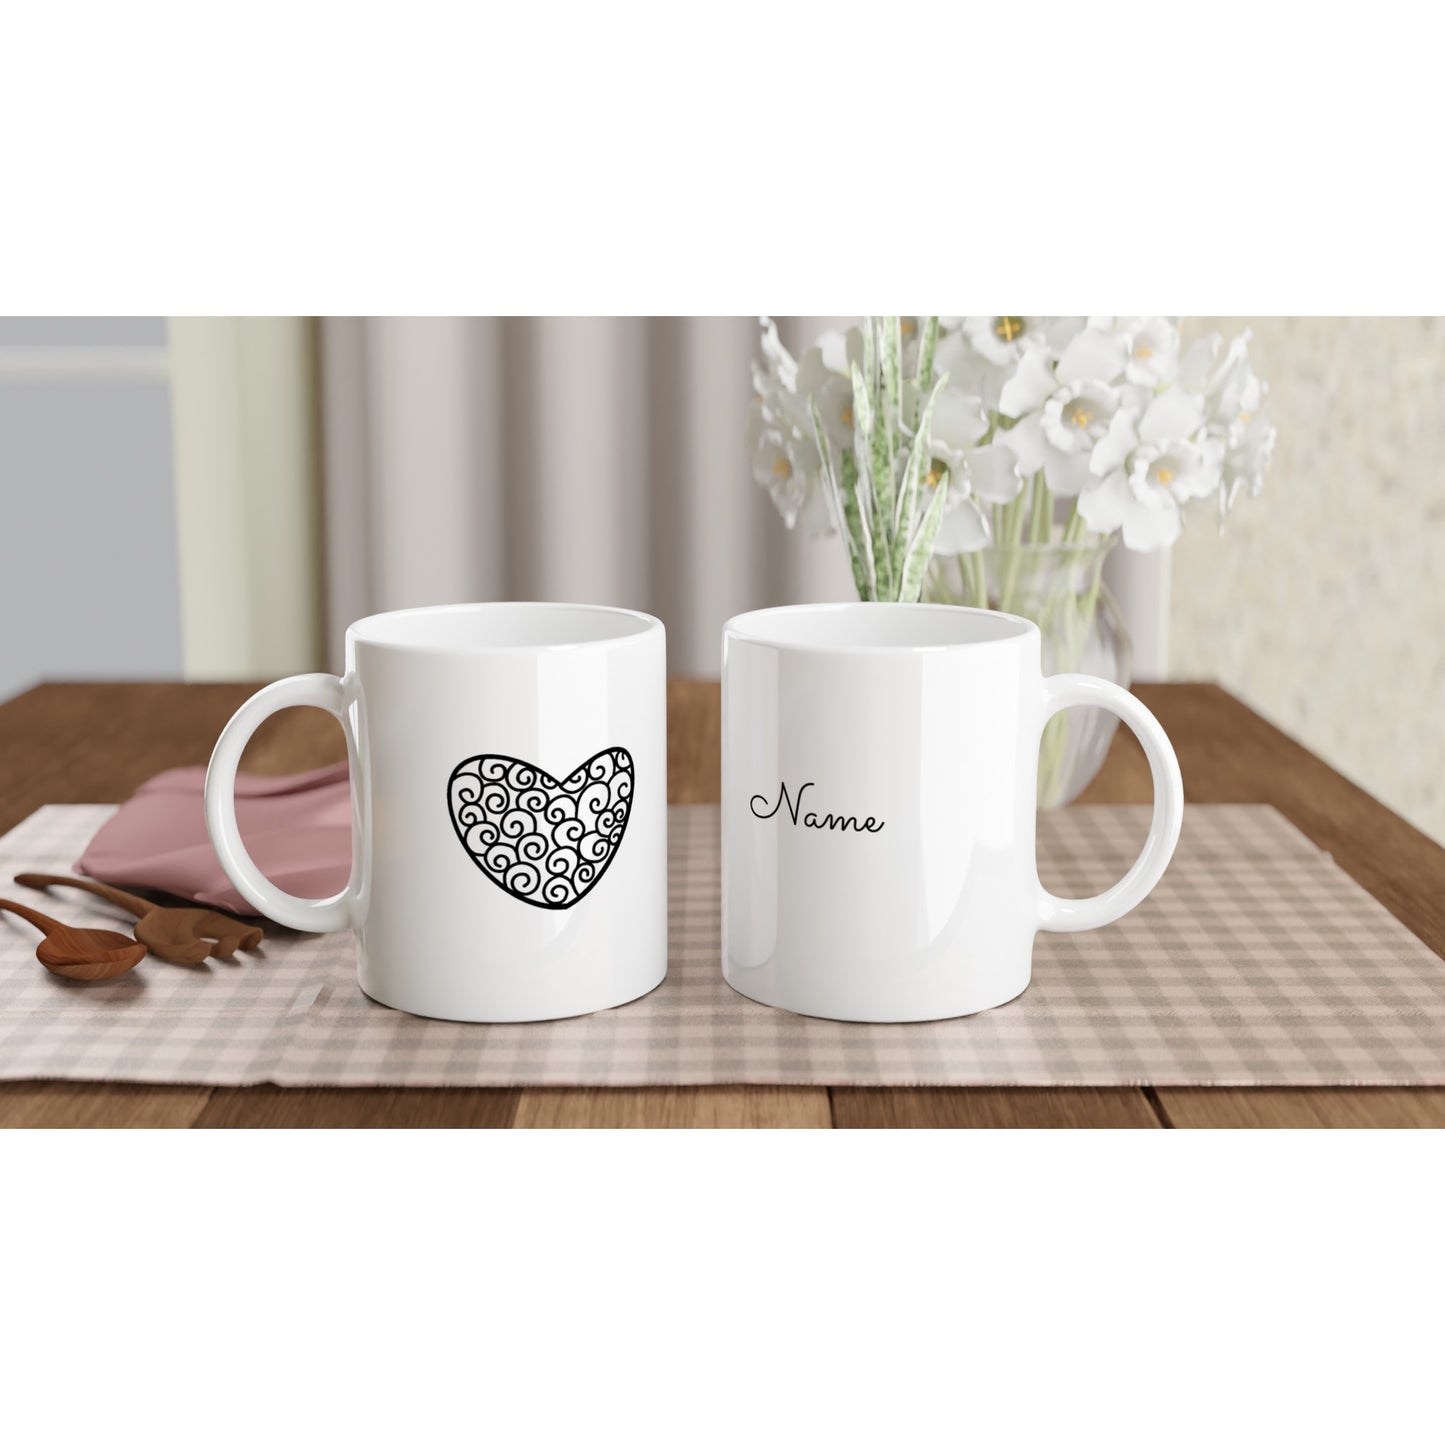 Personalizable  11oz Ceramic Mug